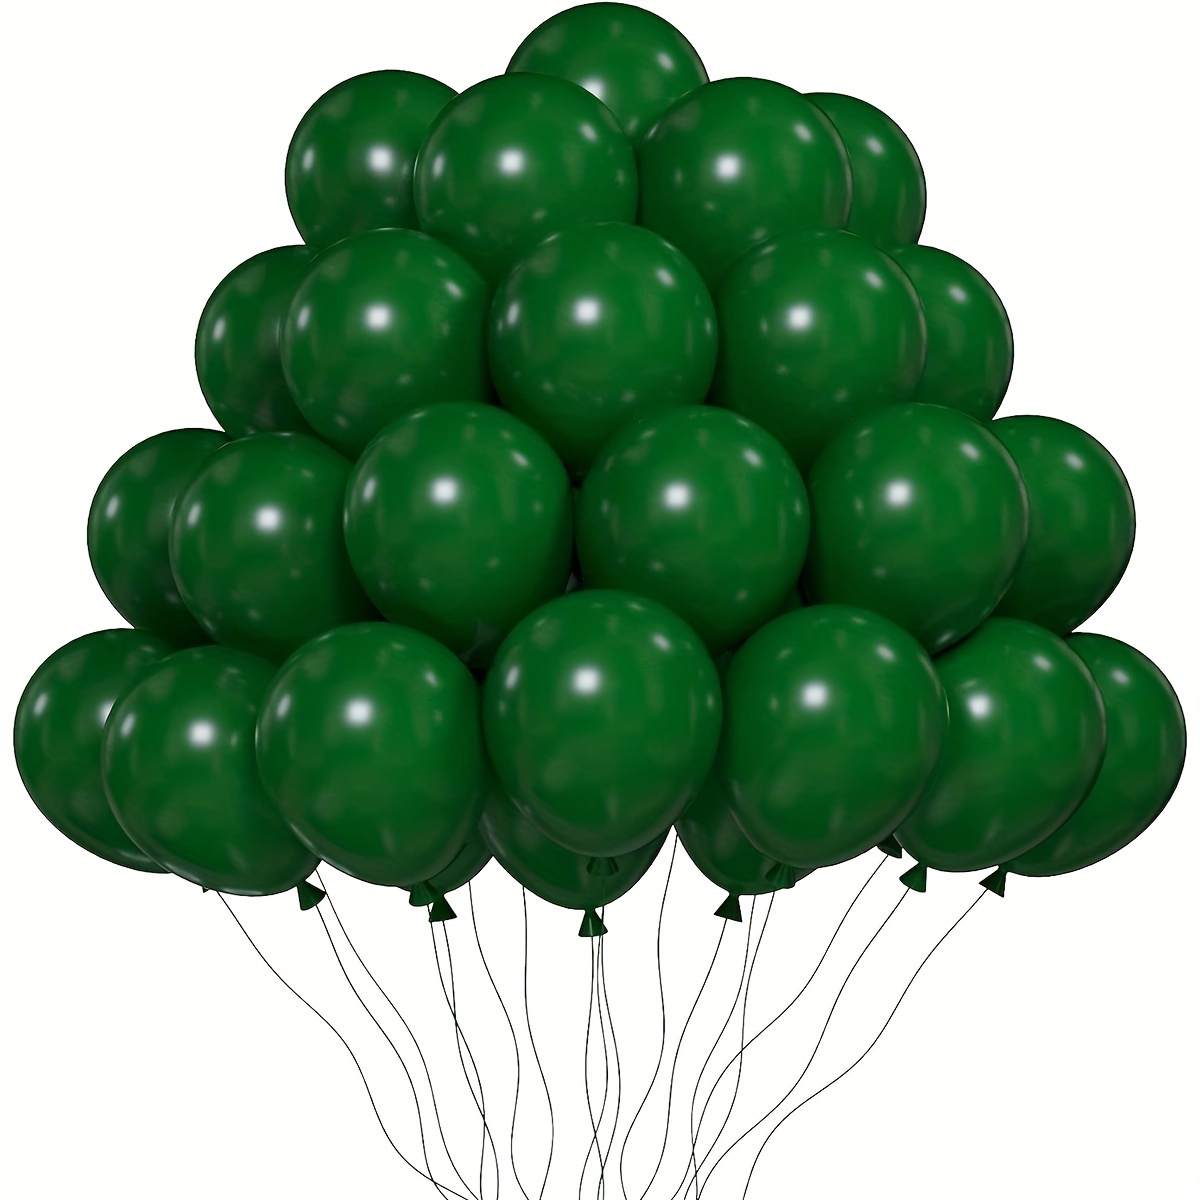  Globos verdes de 12 pulgadas, diferentes tonos, verde